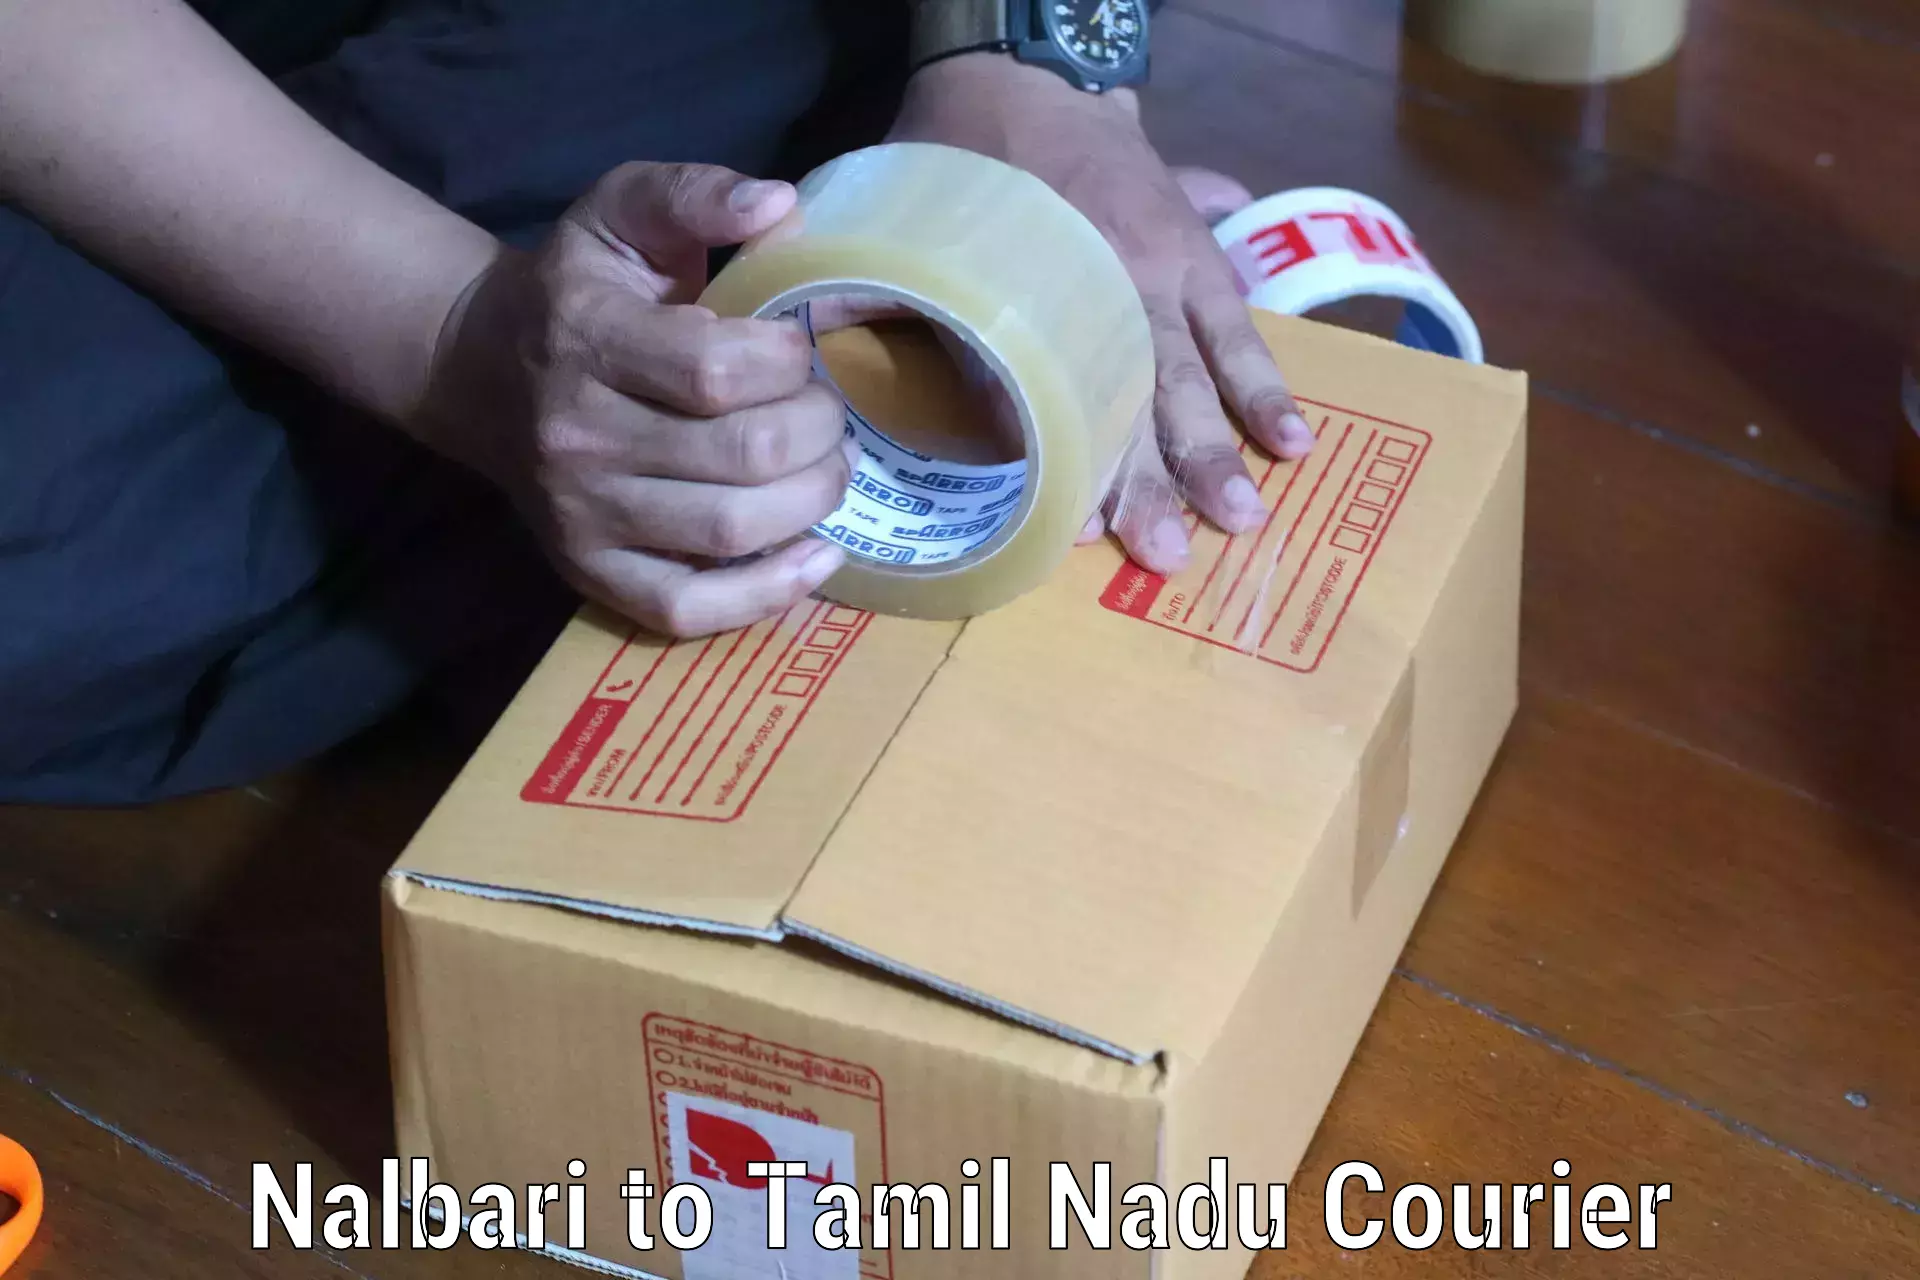 Global shipping solutions Nalbari to Krishnagiri